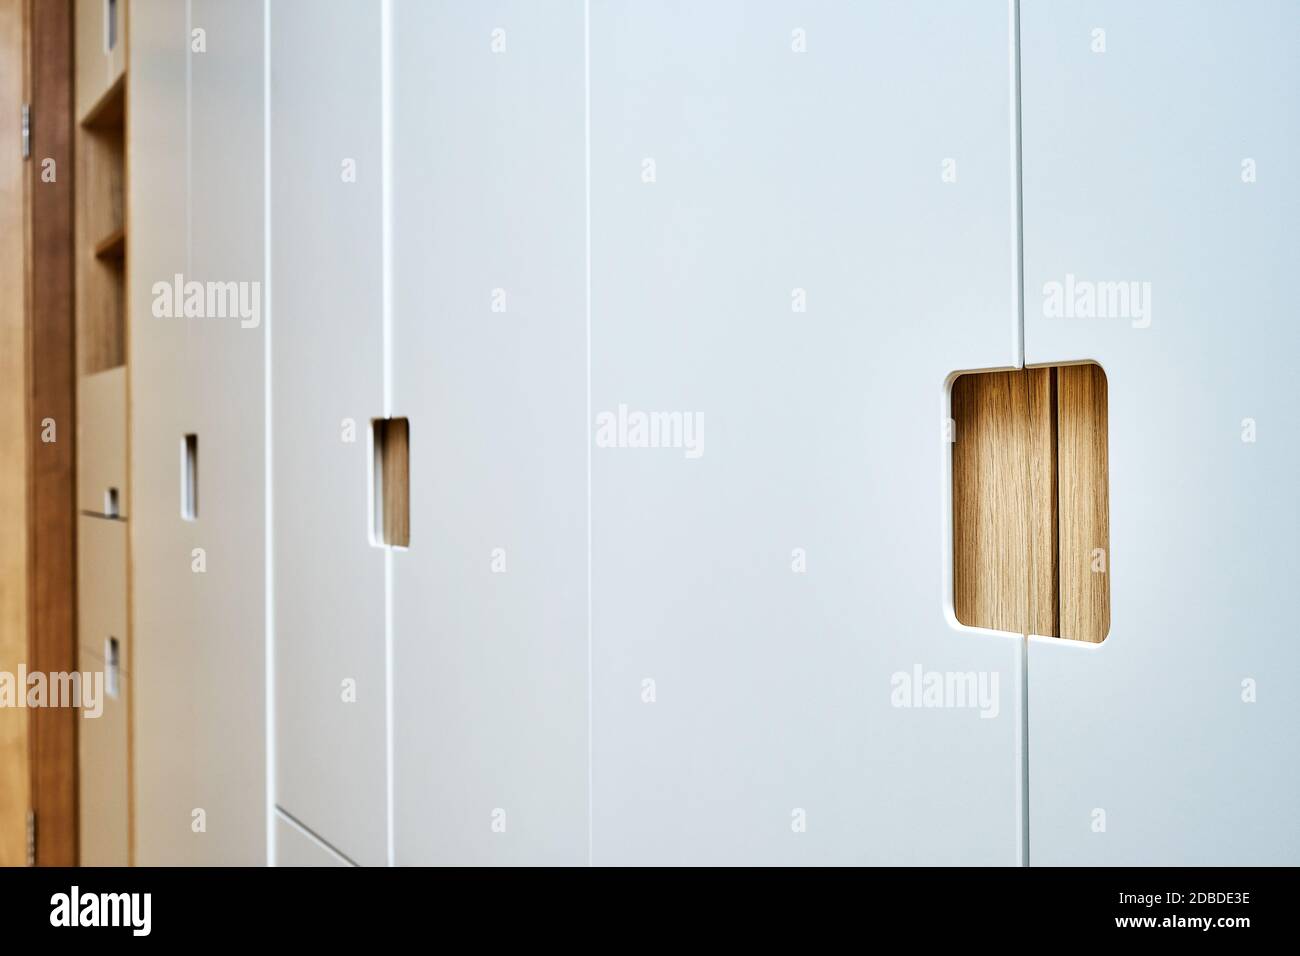 Détail de la garde-robe en gros plan. armoire moderne en bois avec portes-penderie plates à tirer sur les doigts. Armoires en contreplaqué plaqué chêne avec peinture gris clair ca Banque D'Images